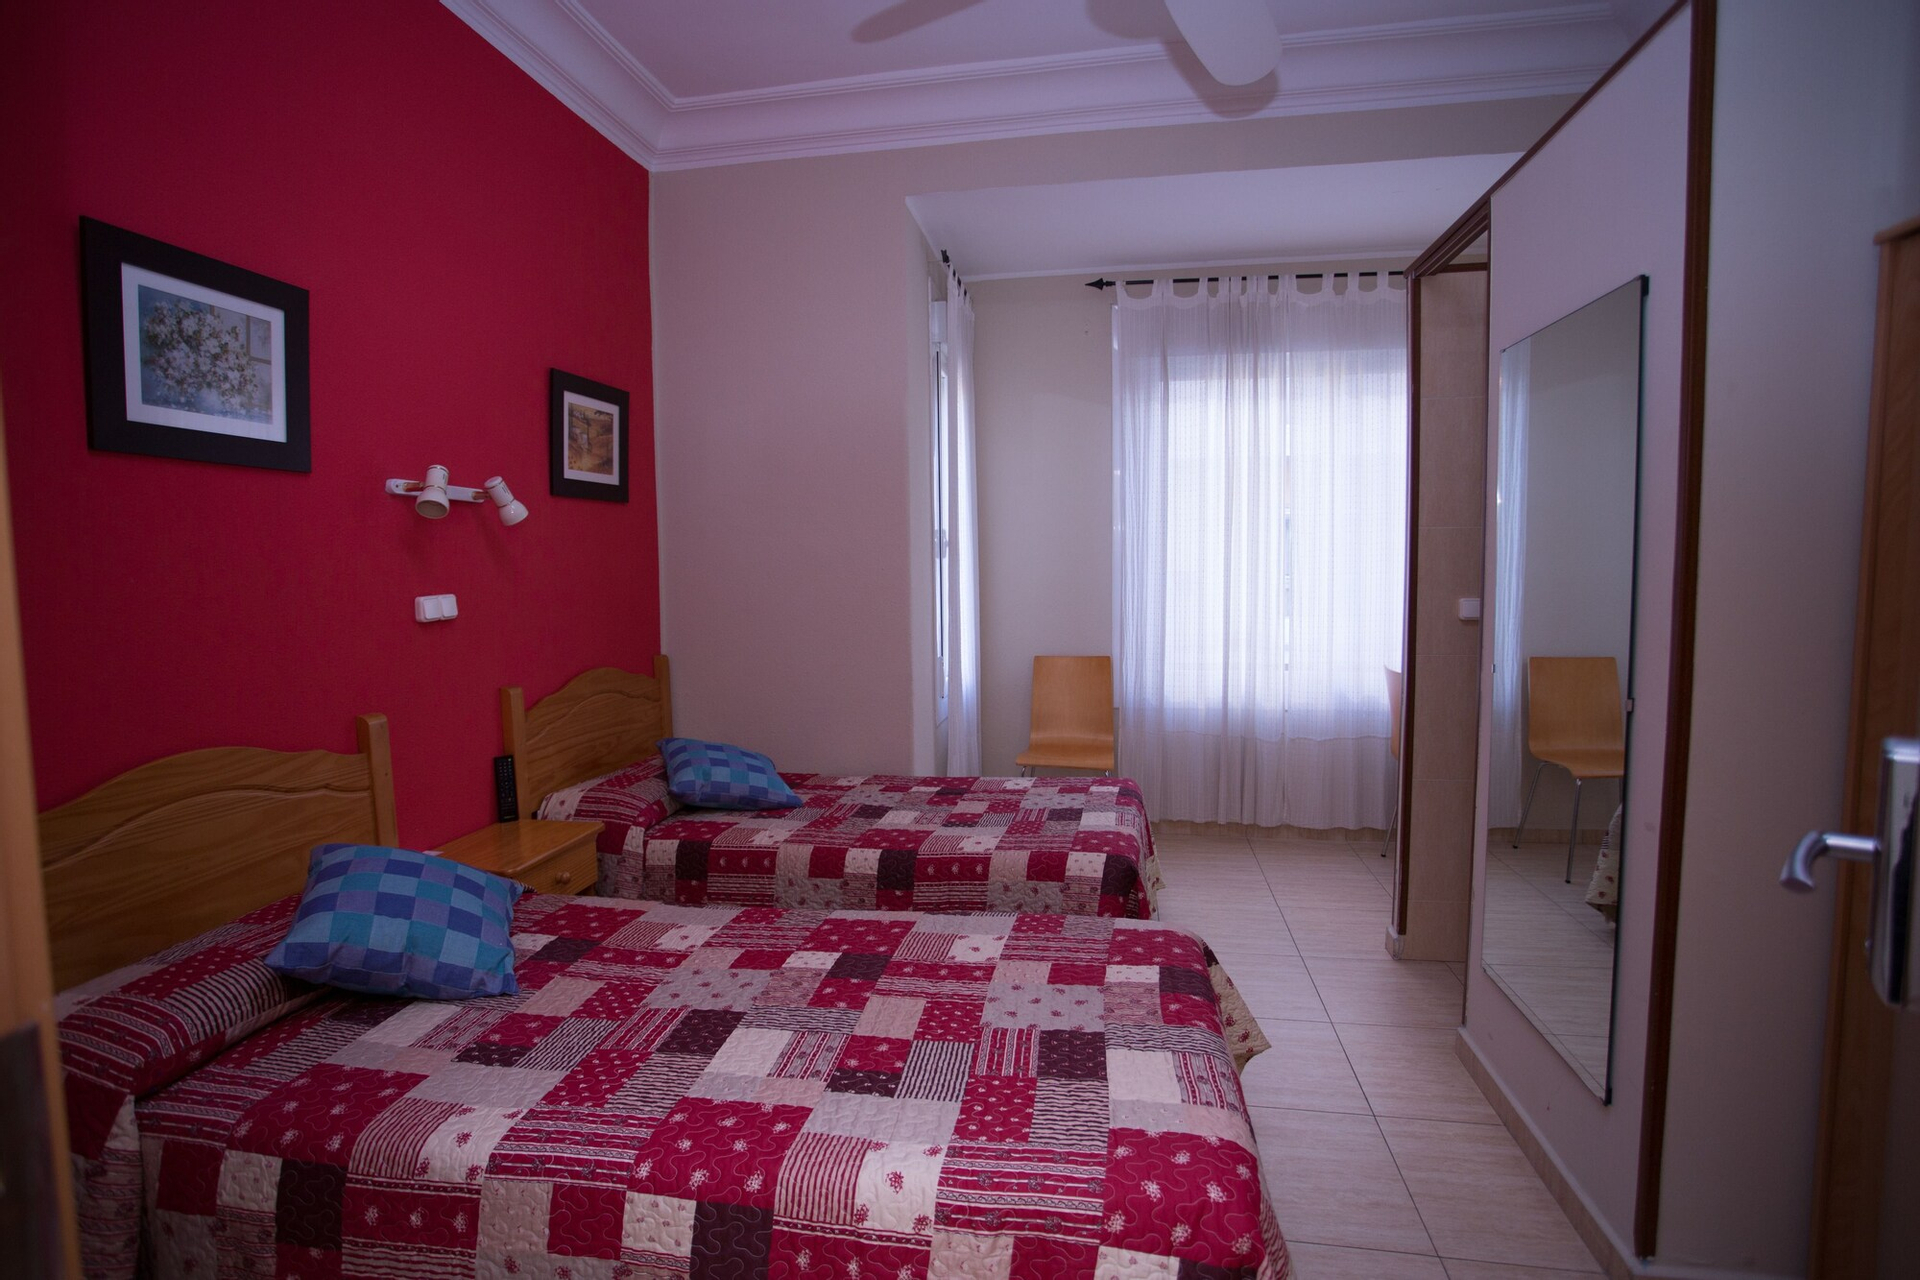 Bedroom, Hostal Navarra, Zaragoza